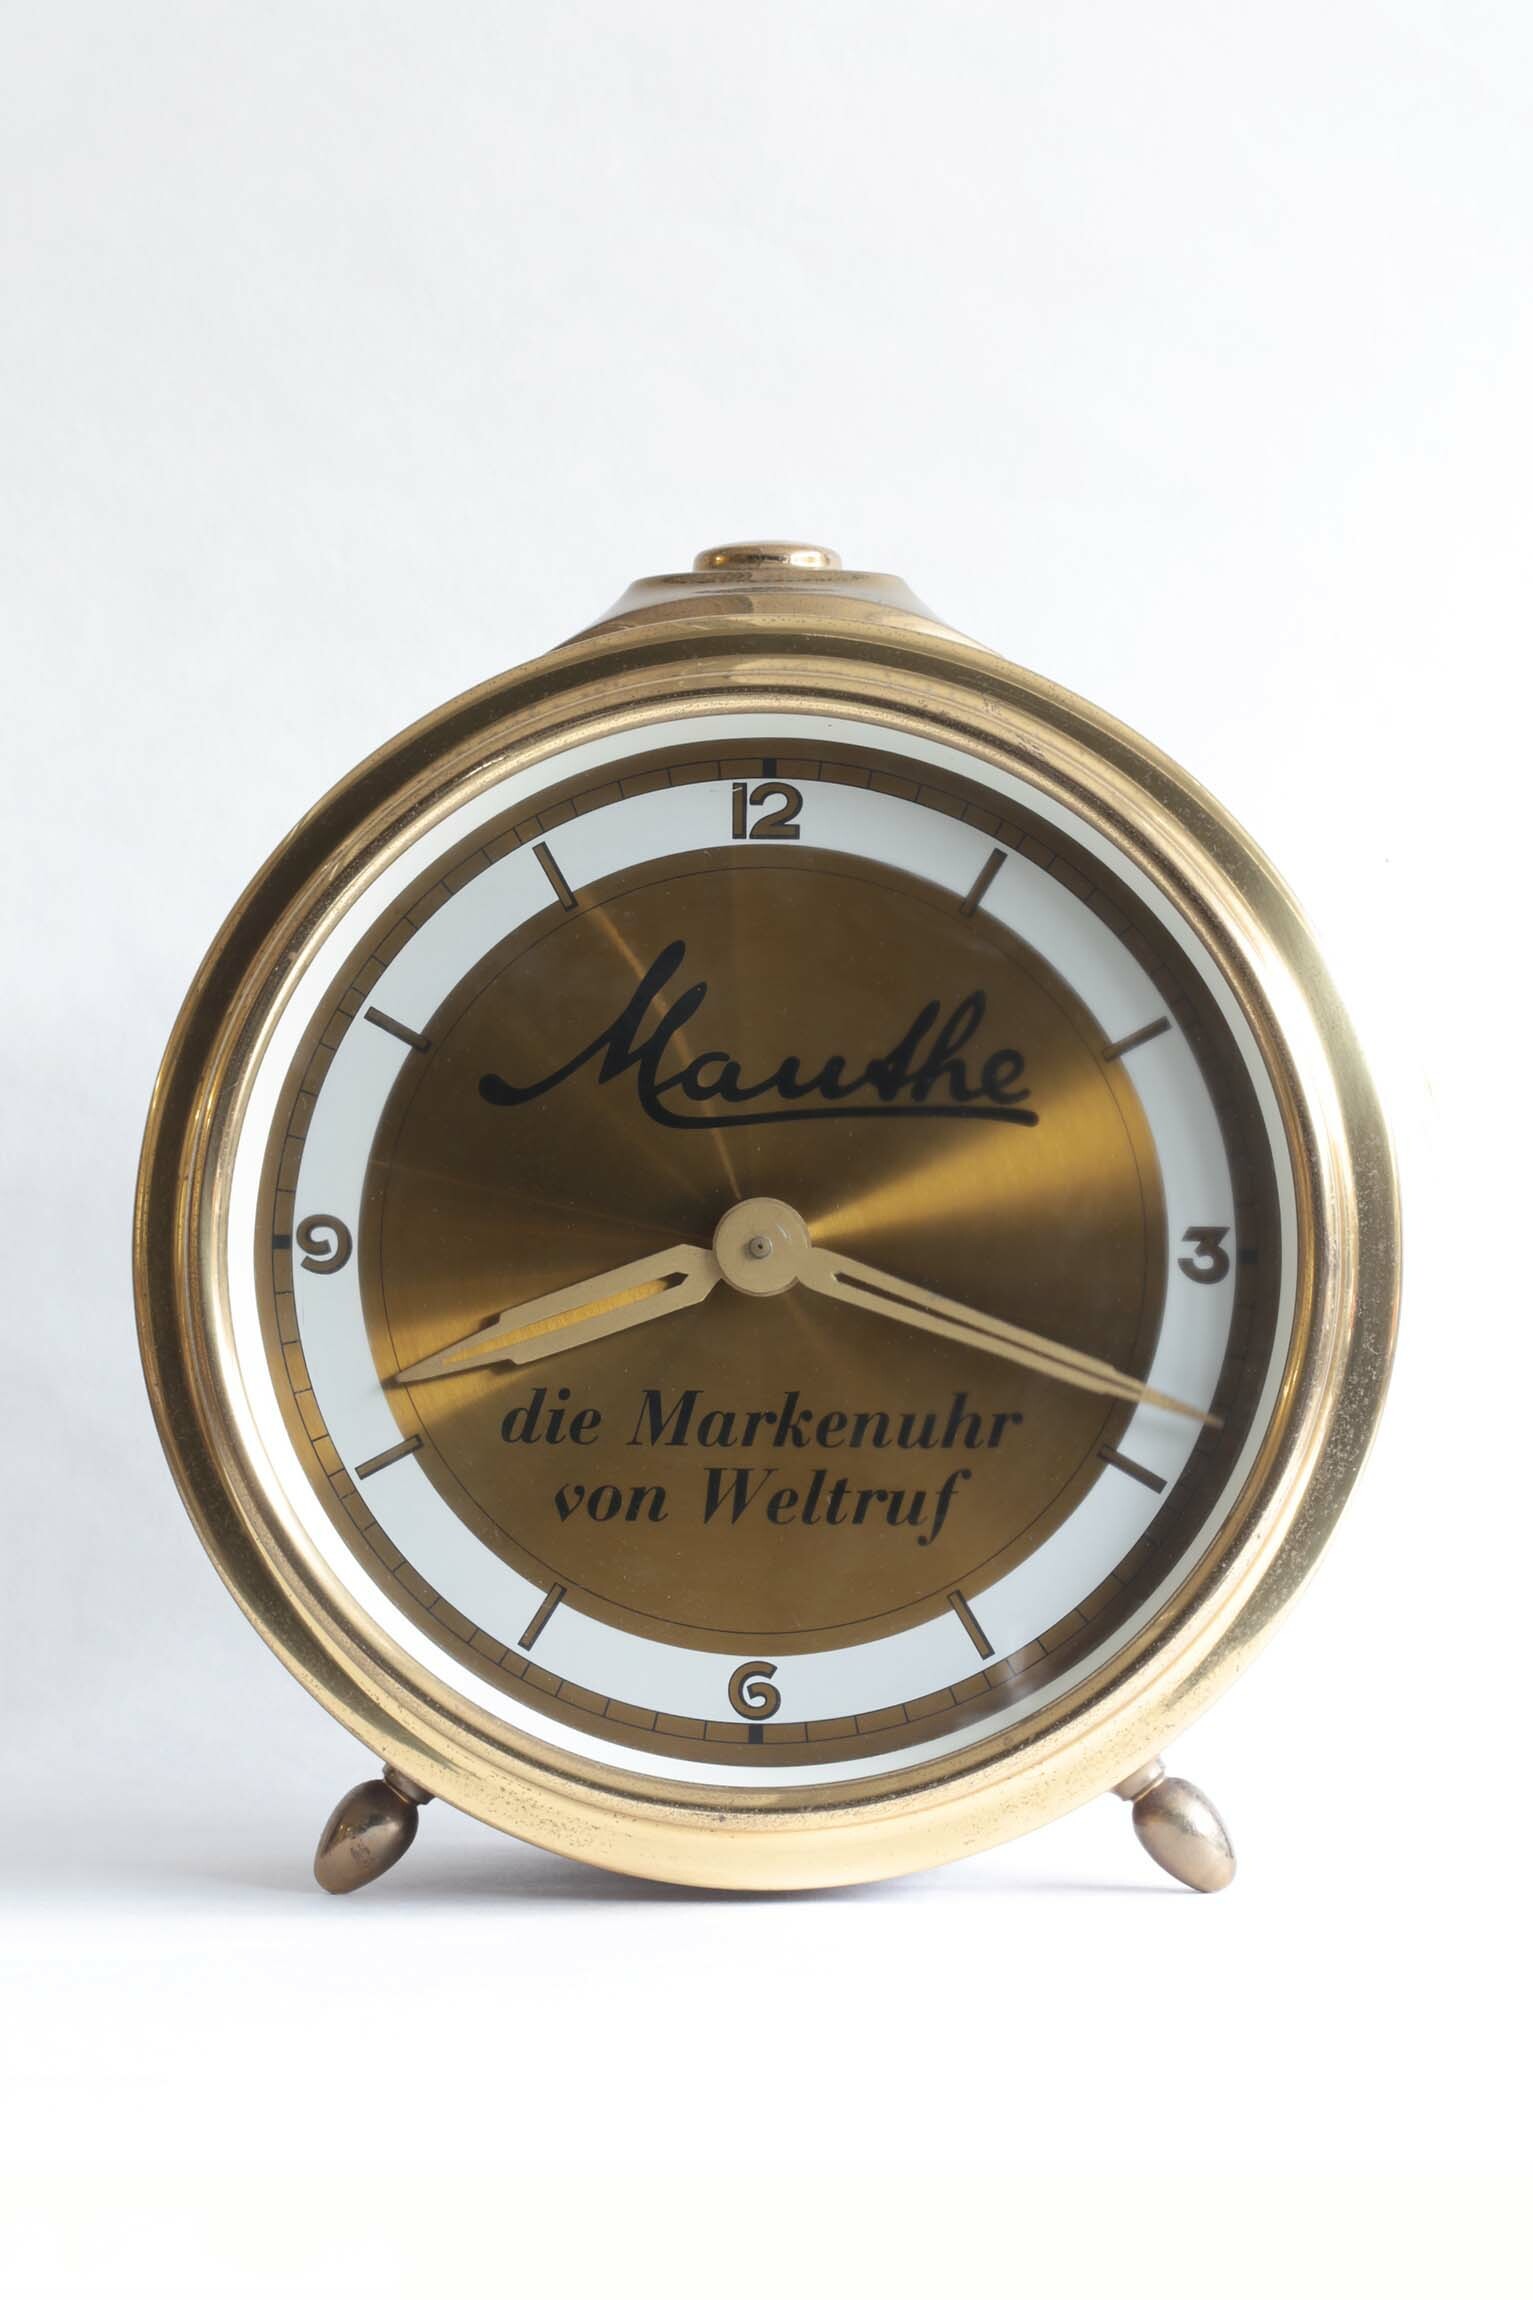 Werbewecker, Mauthe, Schwenningen, um 1930 (Deutsches Uhrenmuseum CC BY-SA)